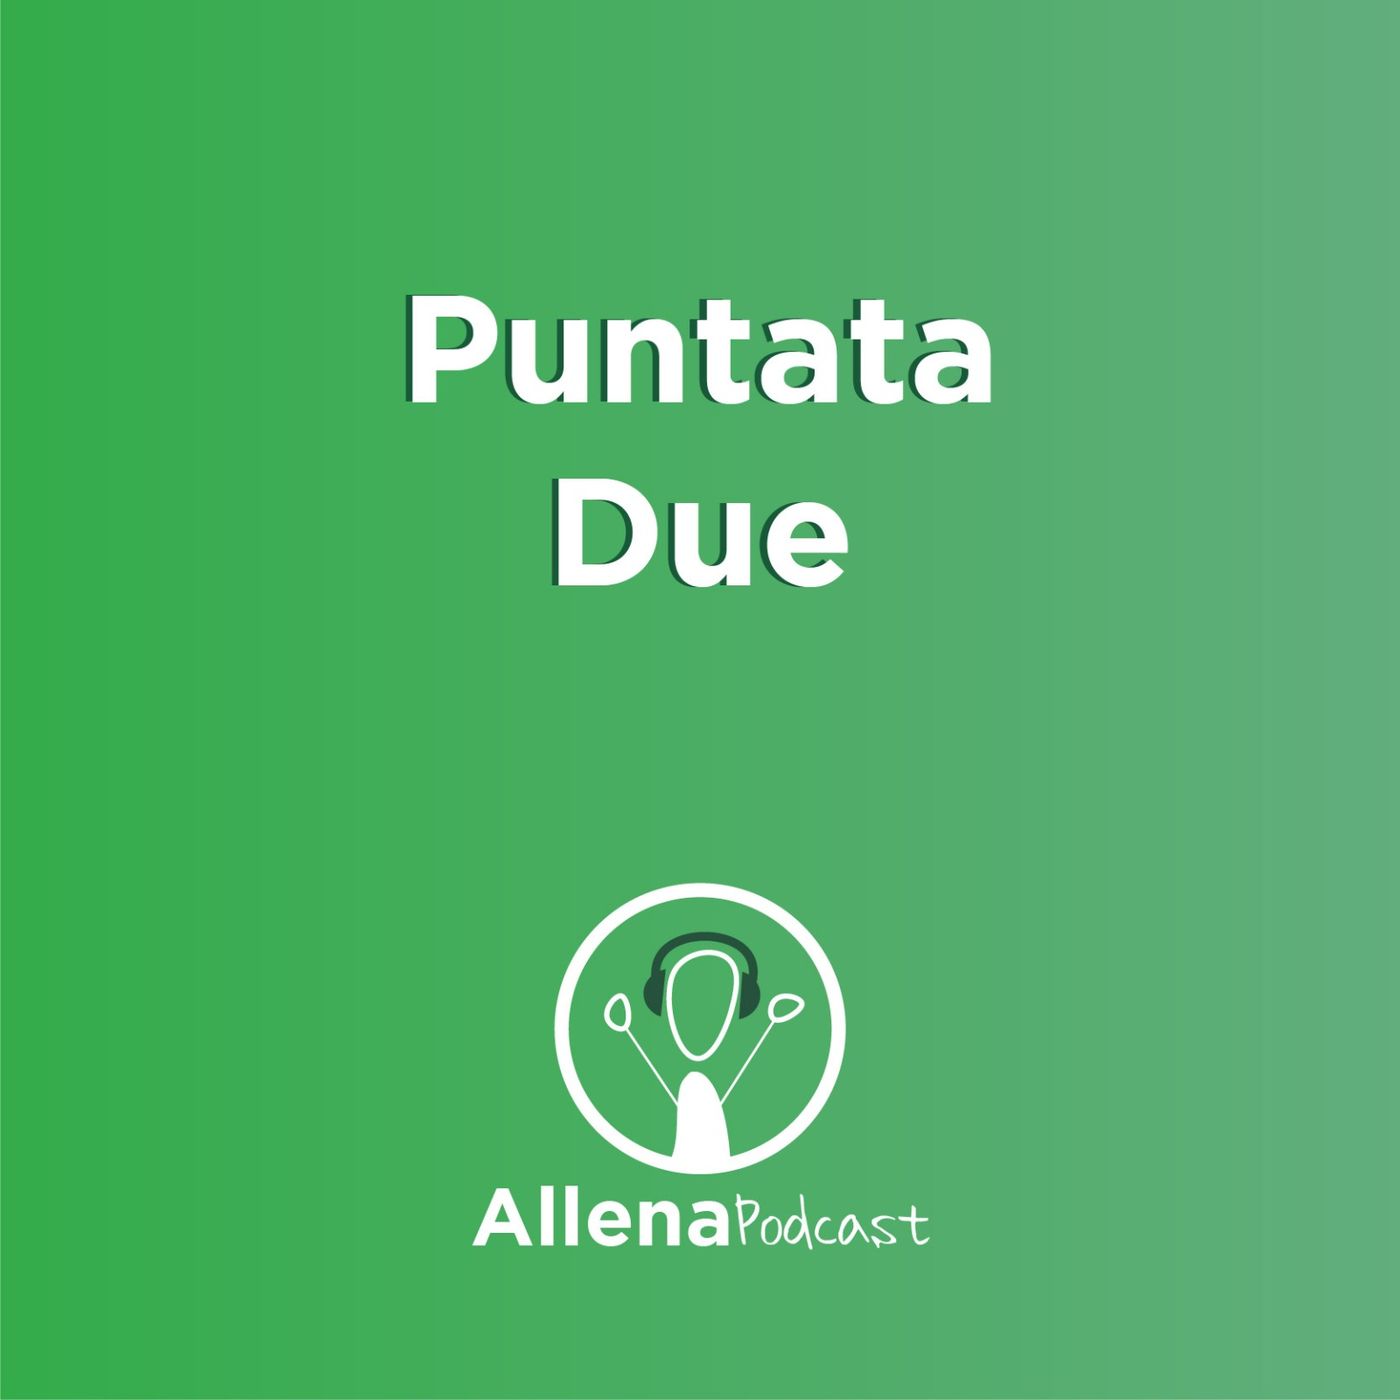 AllenaPodcast Puntata 2